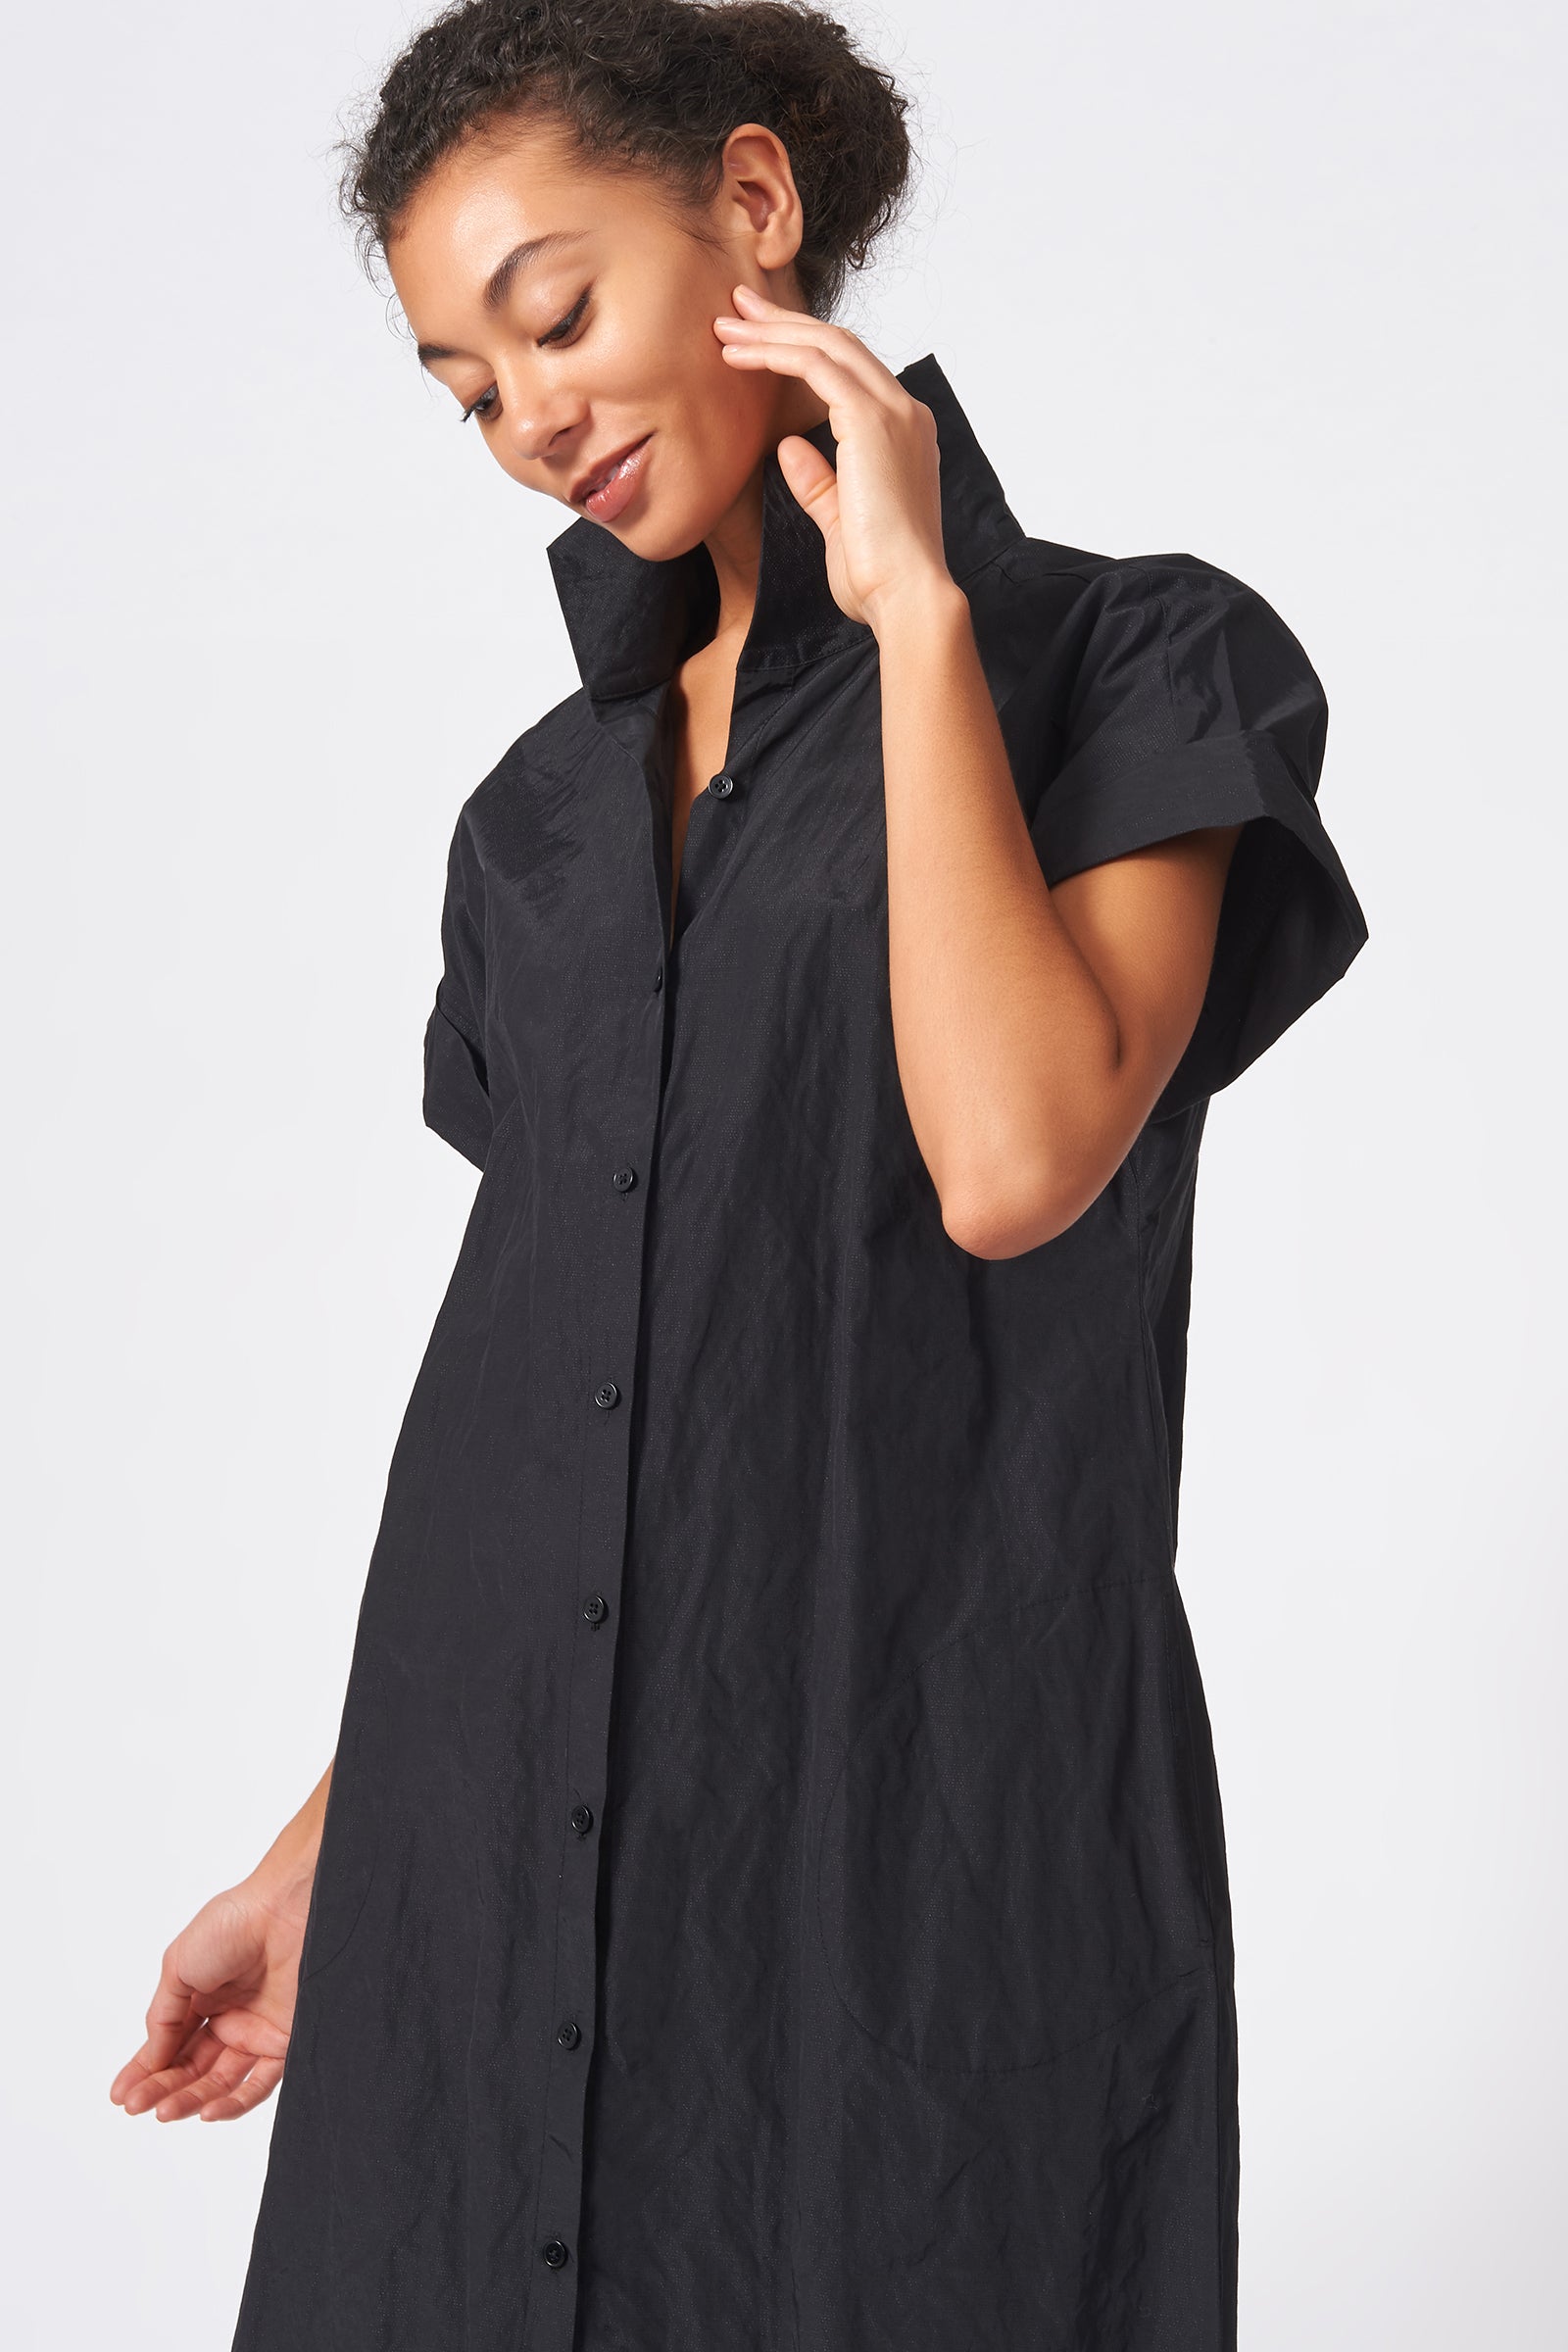 Kal Rieman Kimono Shirt Dress Cotton Nylon in Black on Model Front Side View